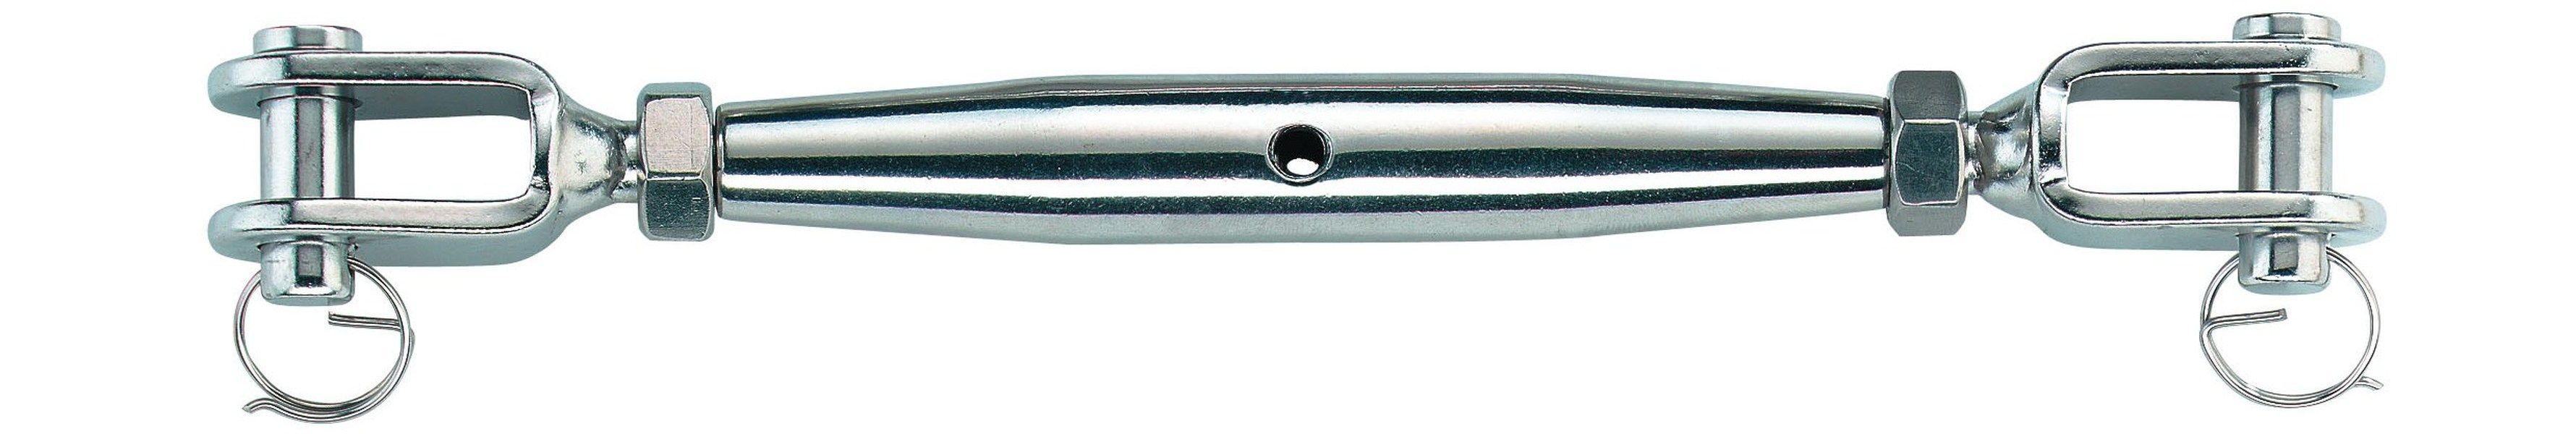 SEILFLECHTER - NIRO-Wantenspanner M10 für 5 mm Seil